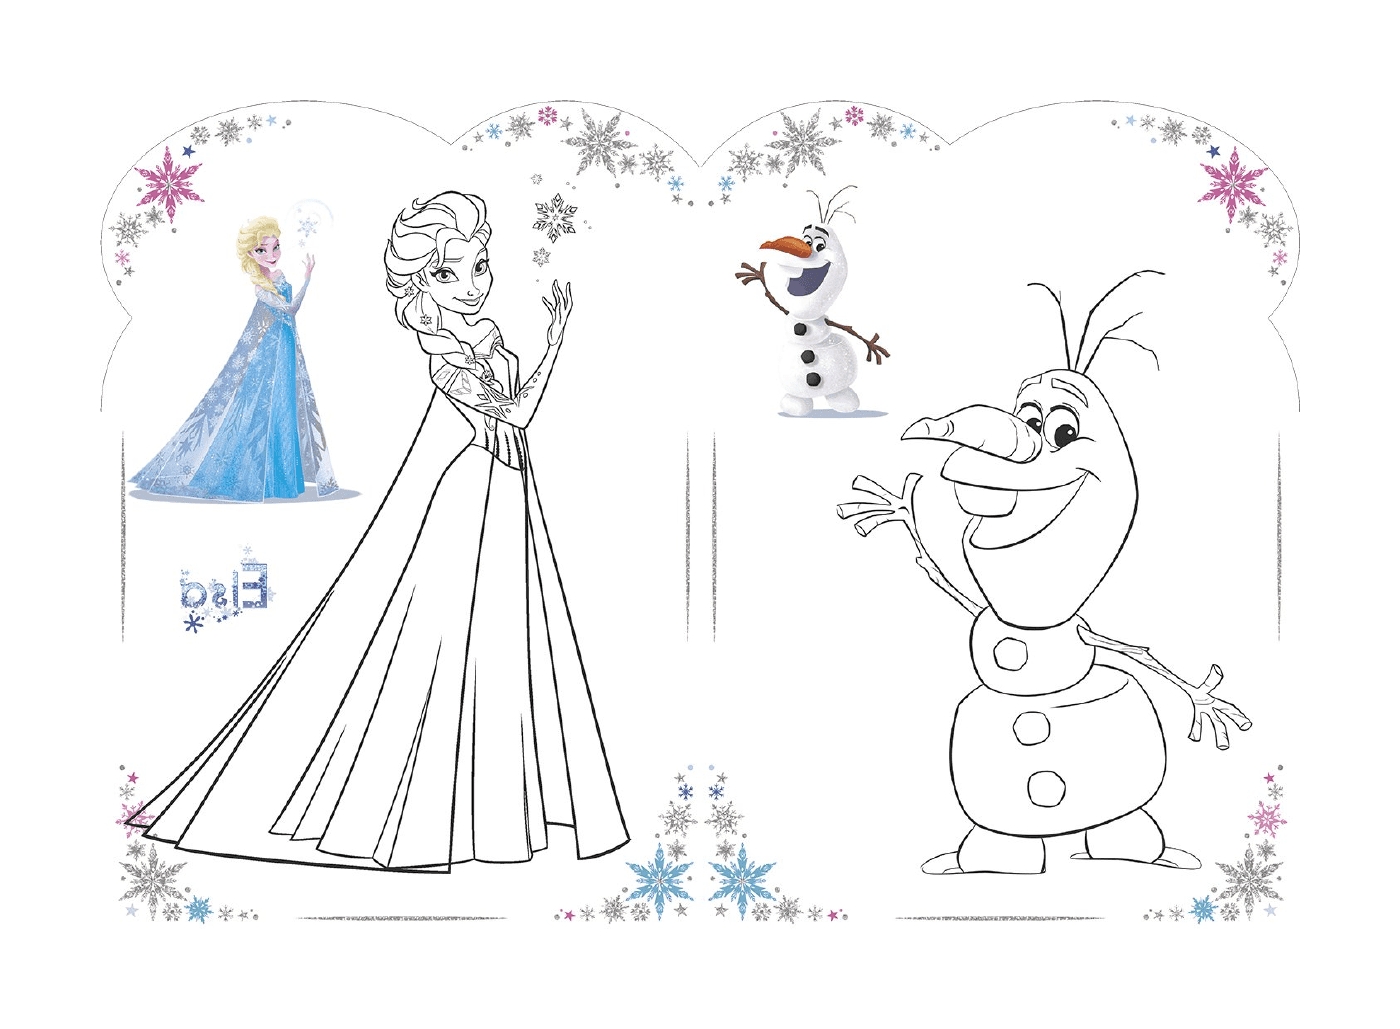   Olaf et Elsa de La Reine des neiges, Disney 2018 